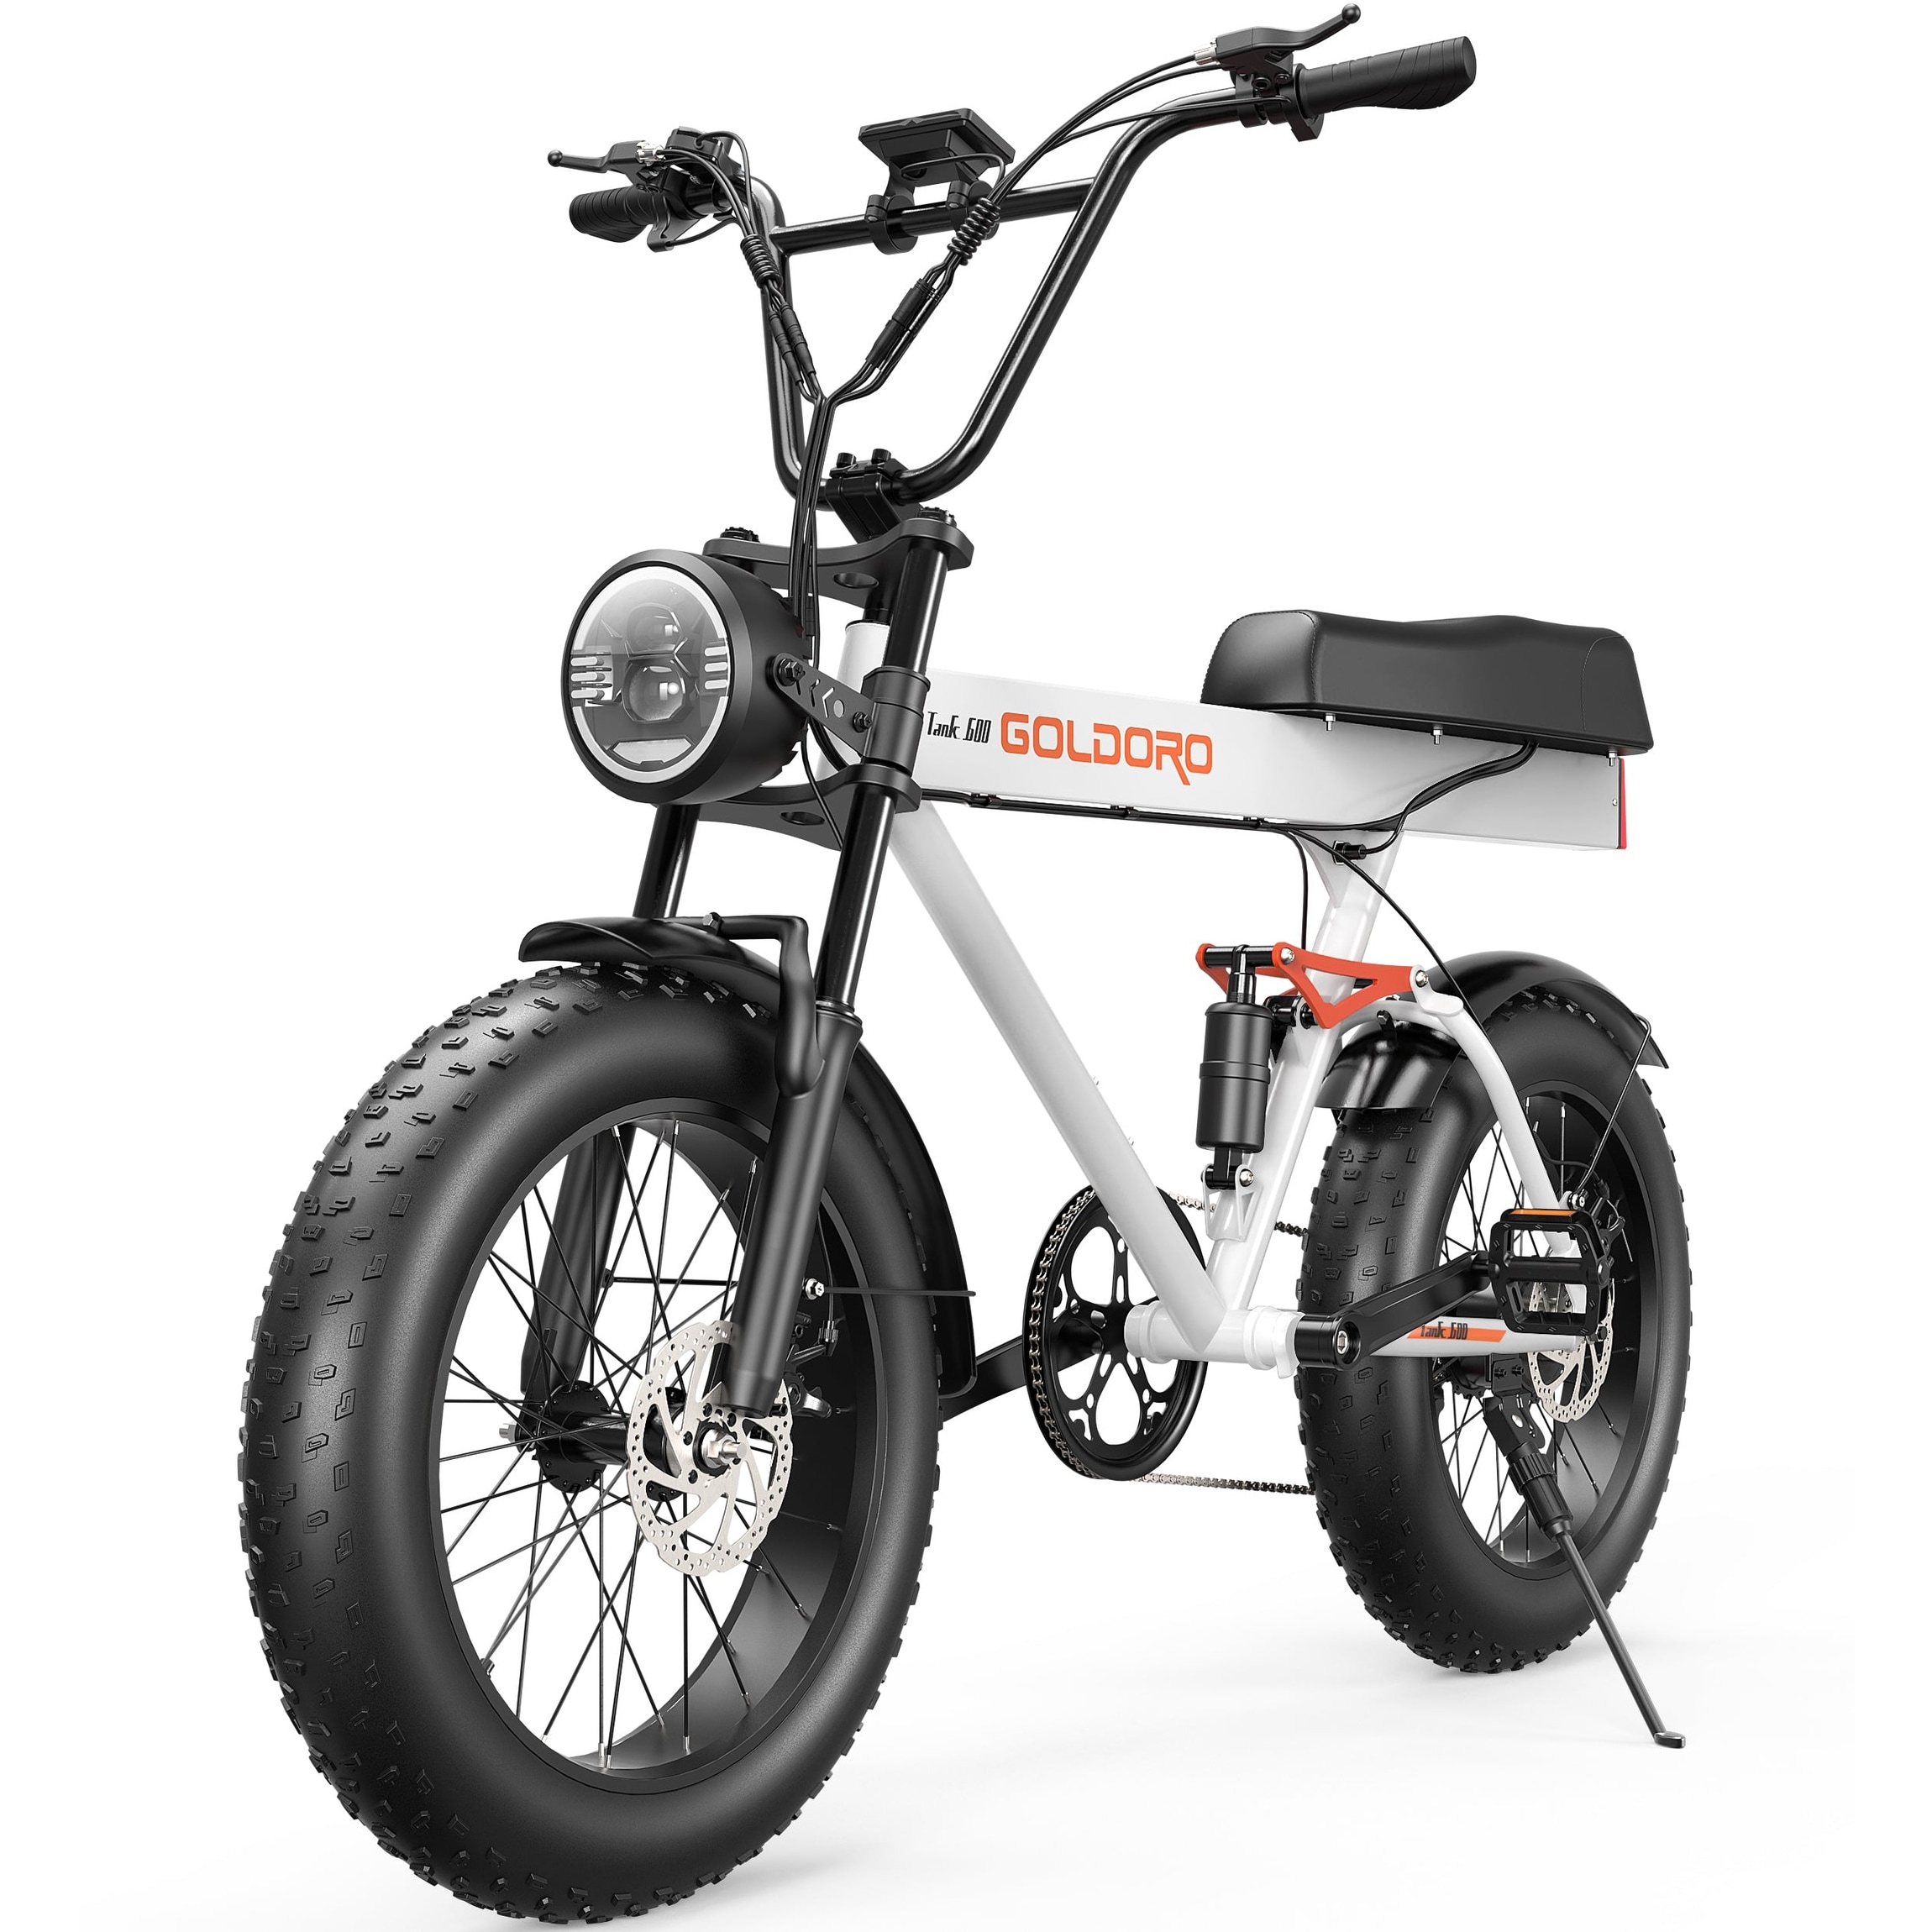 Novangua Bicicleta Eléctrica Plegable Para Adultos, Batería Removible 48v  15ah, 35 Km/h, 500w, Frente Shimano Y Amortiguadores Traseros,fashion Look  Urban Travel Tools